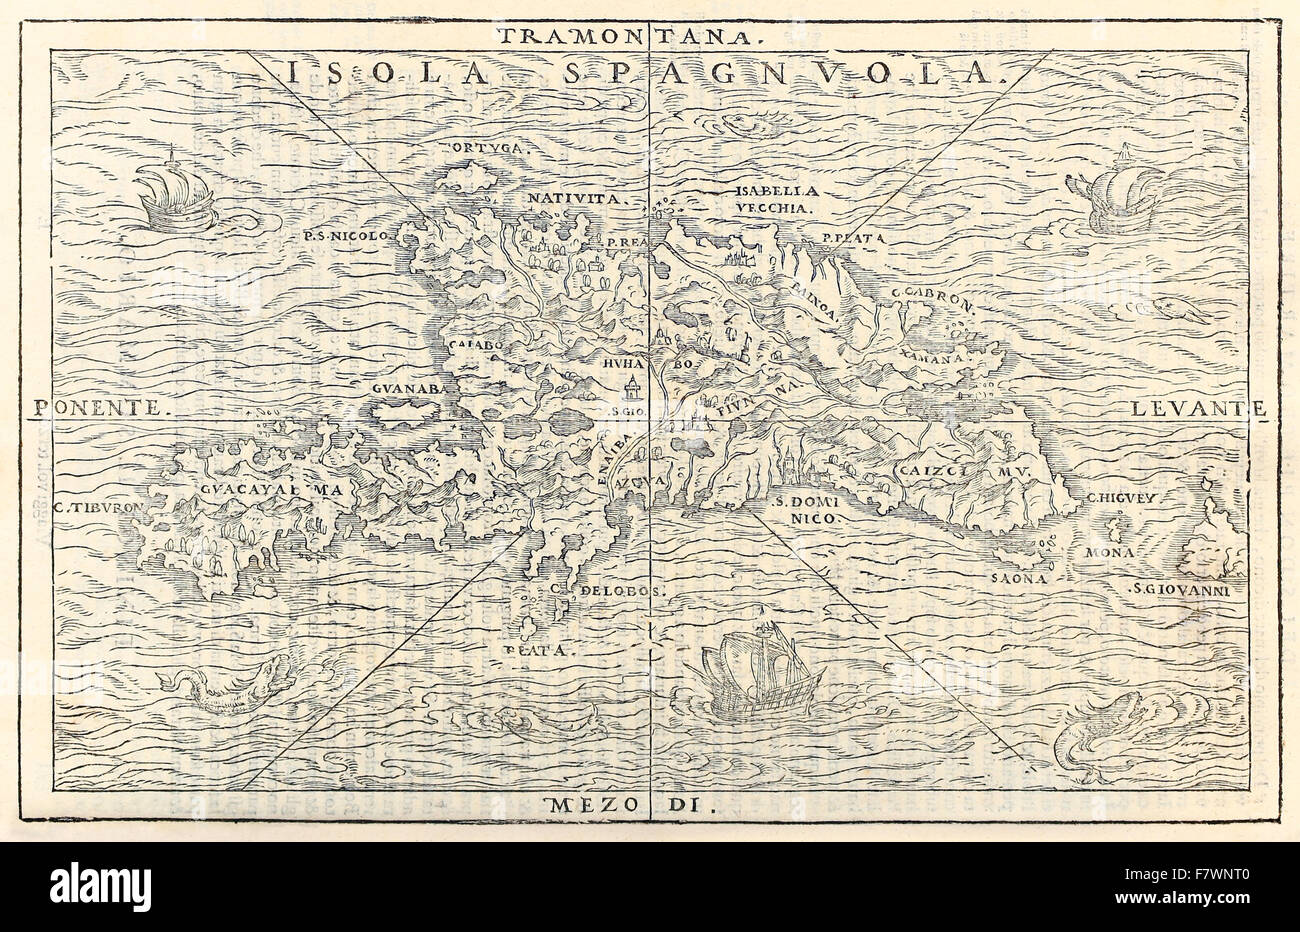 'Isola Spagnvola' Karte von der Insel Hispaniola, jetzt Haiti und der Dominikanischen Republik. Holzschnittdruck von "Delle Navigationi et Viaggi" von Giovanni Battista Ramusio (1485-1557). Siehe Beschreibung weitere Informationen Stockfoto